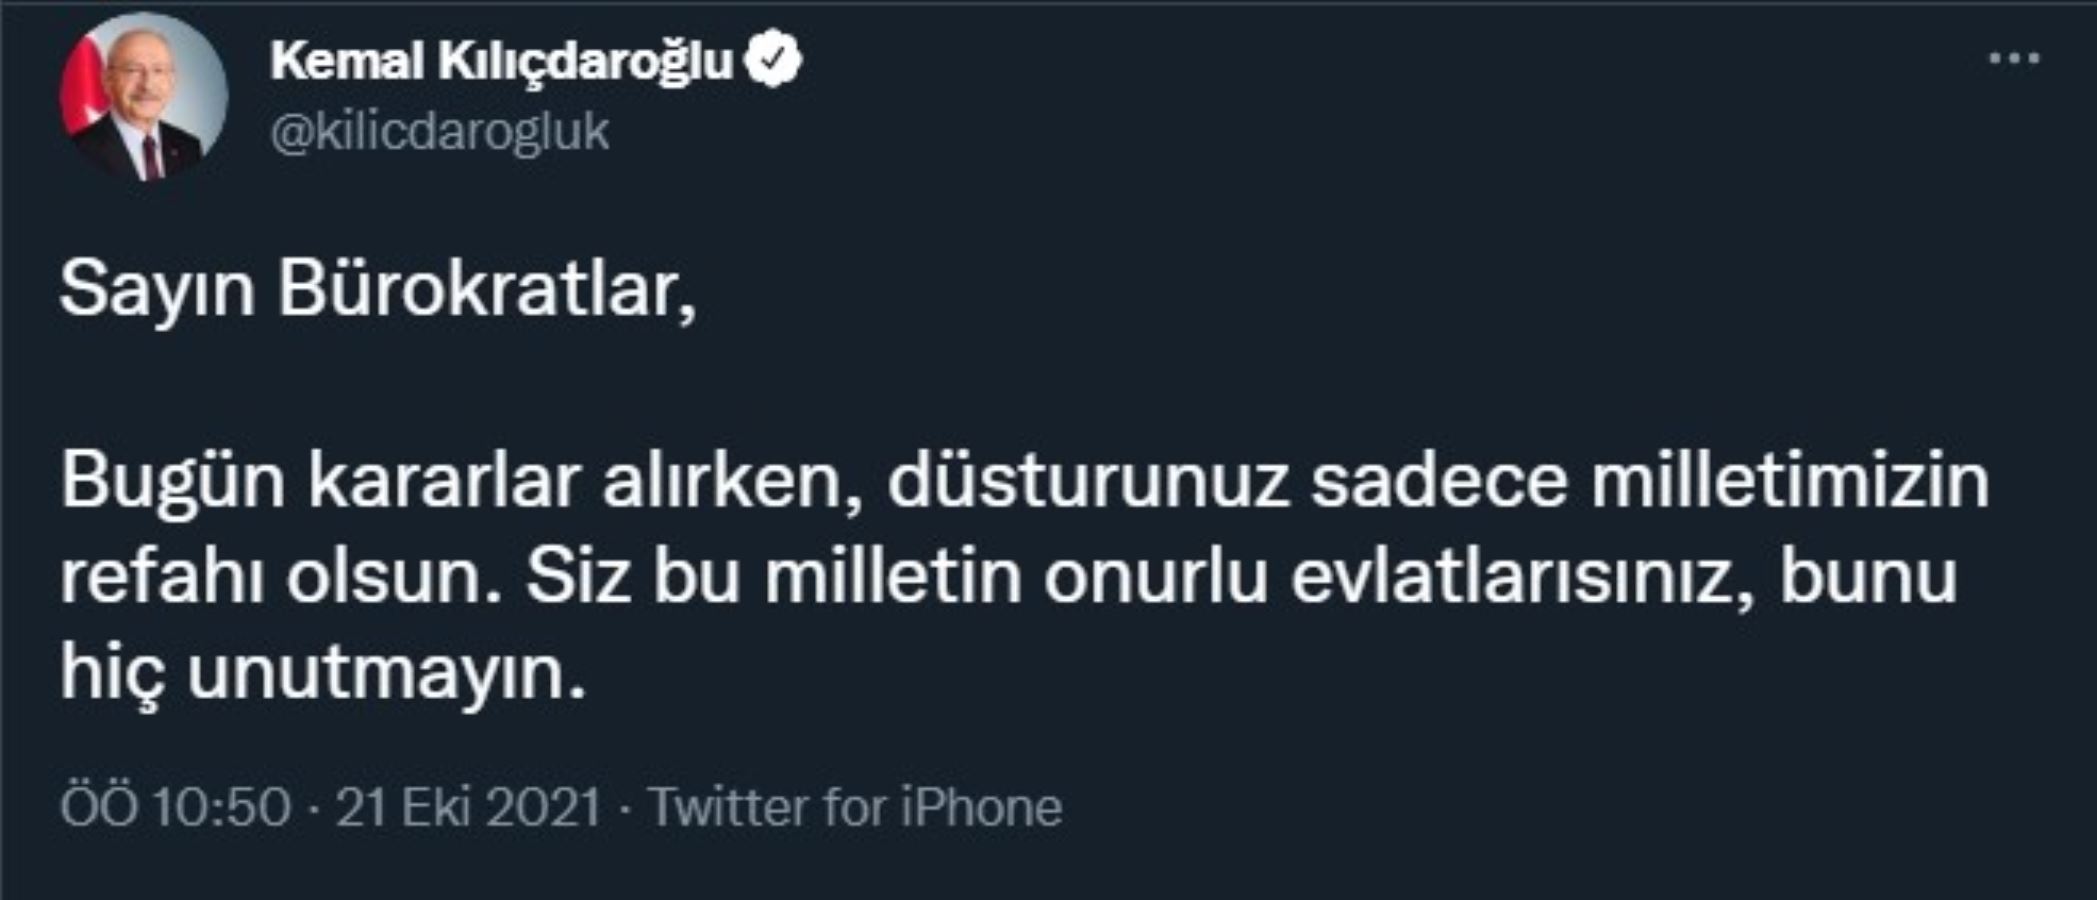 Kemal Kılıçdaroğlu'ndan bürokratlara yeni çağrı